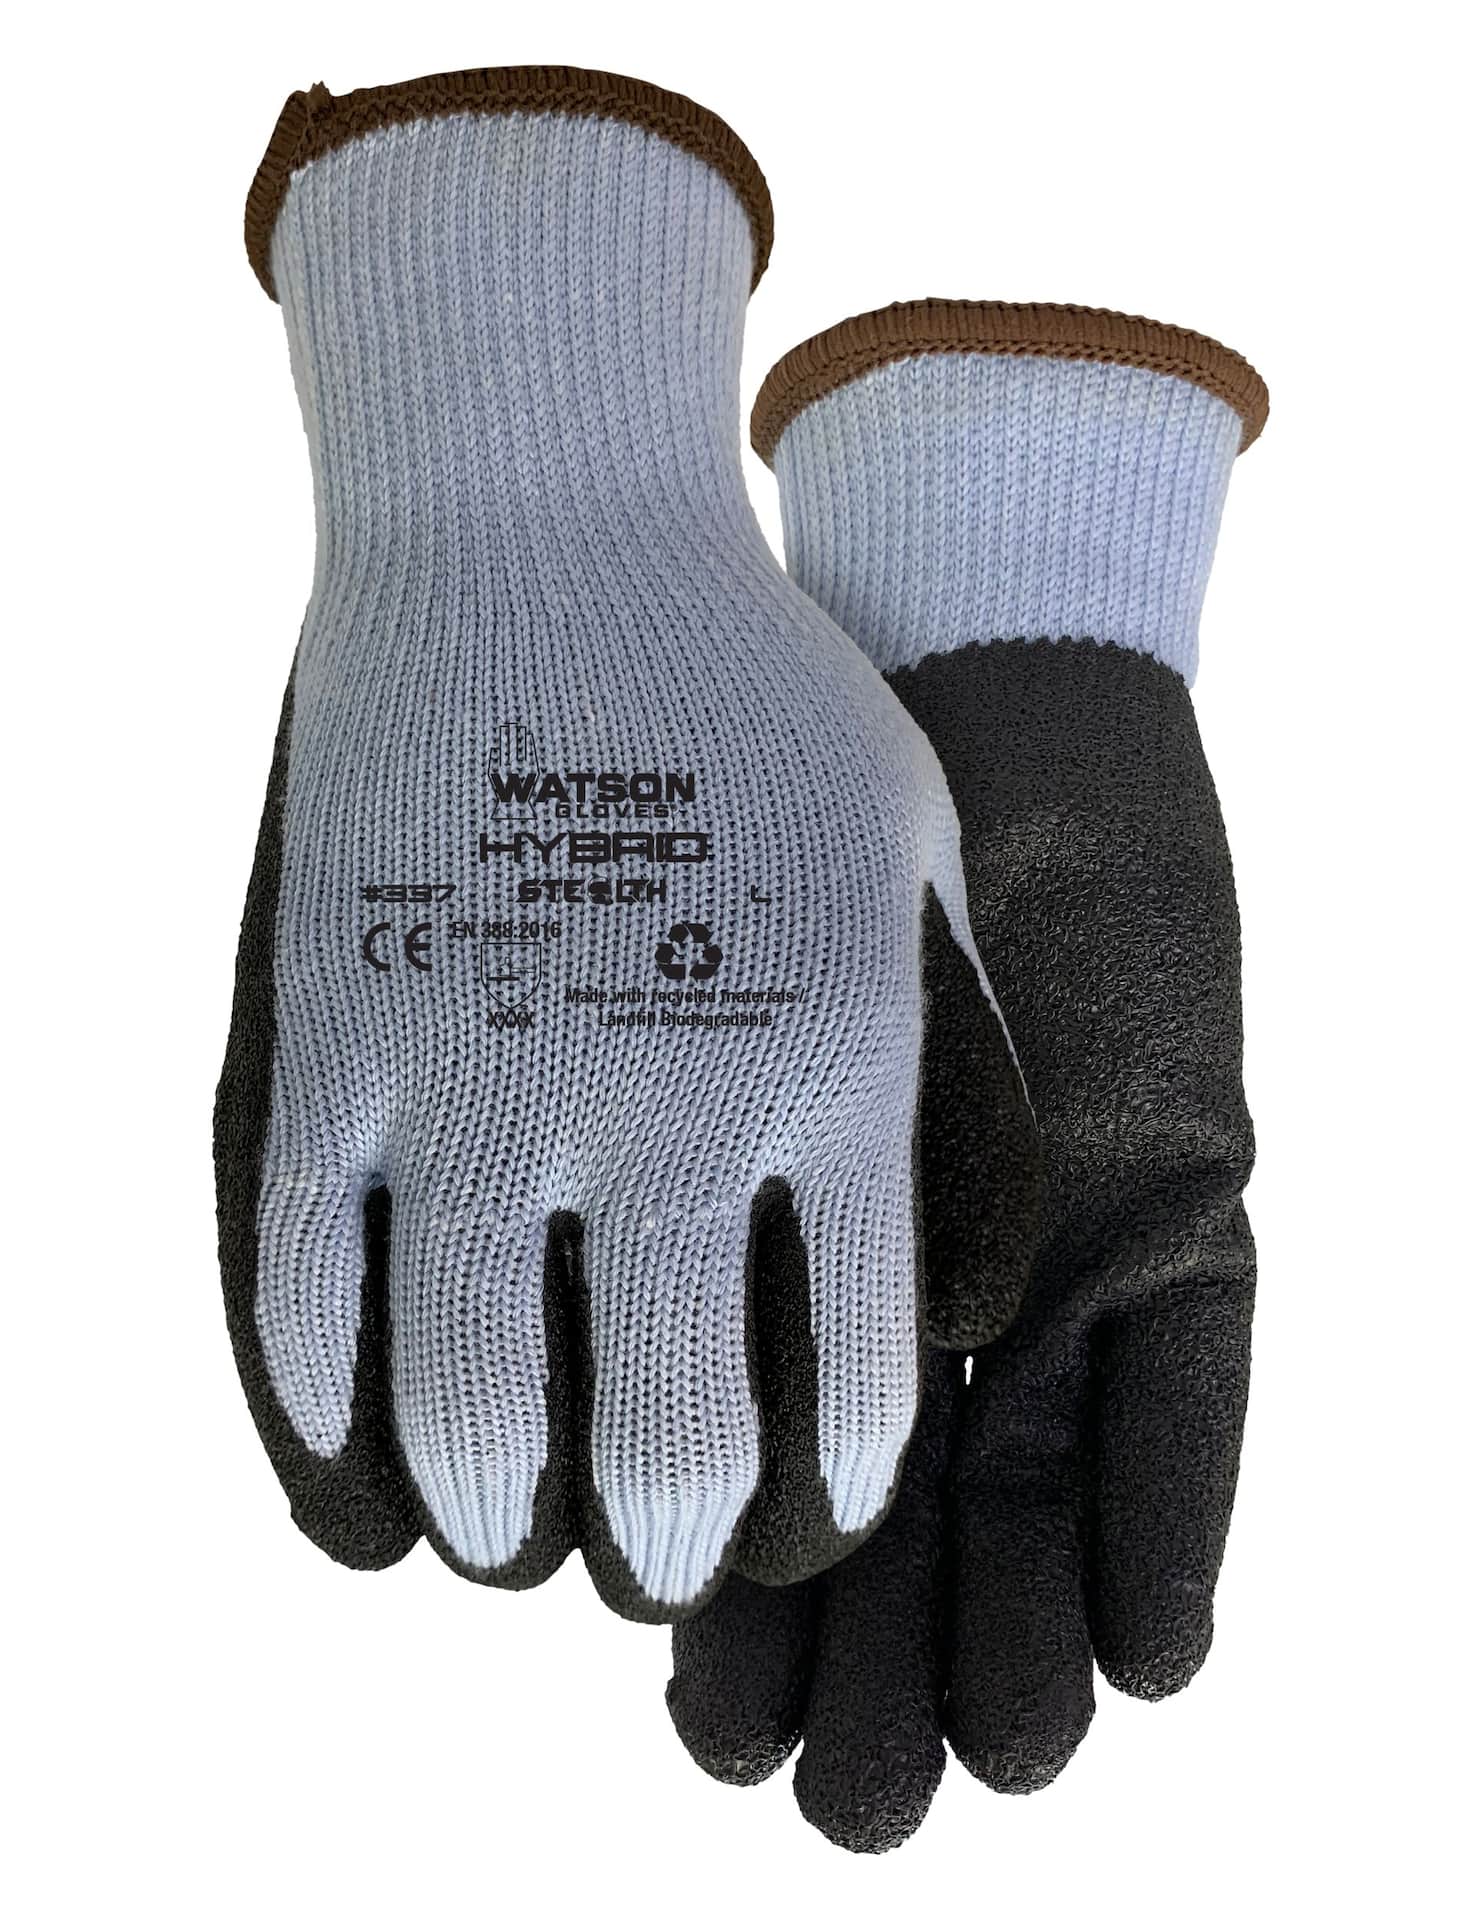 La saison des barbecues est ouverte : Profitez-en en toute sécurité avec  ces gants anti-chaleur !